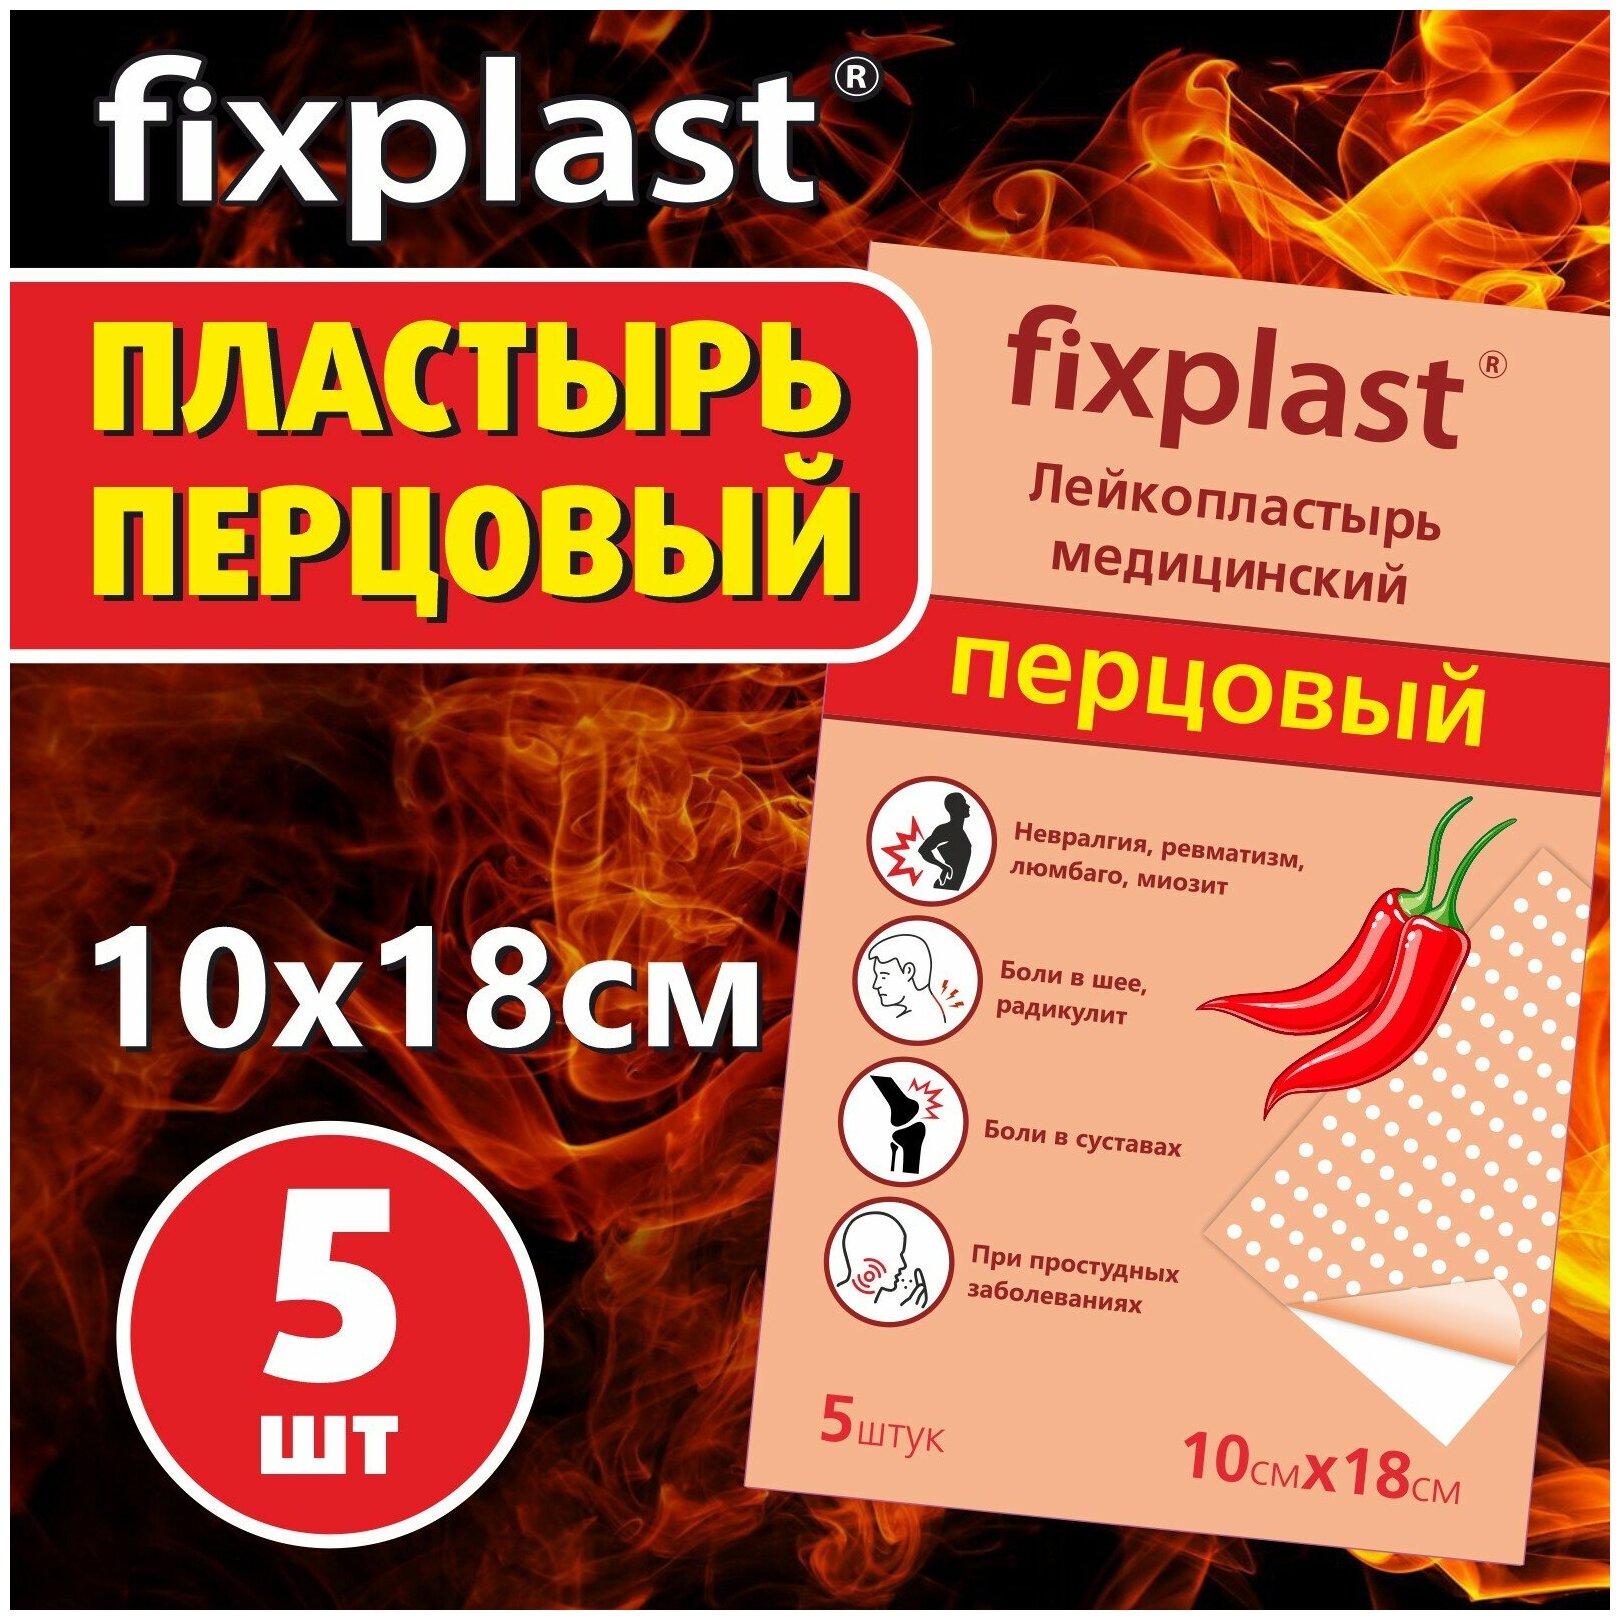 Пластырь обезболивающий FixPlast медицинский перцовый 10*18 см